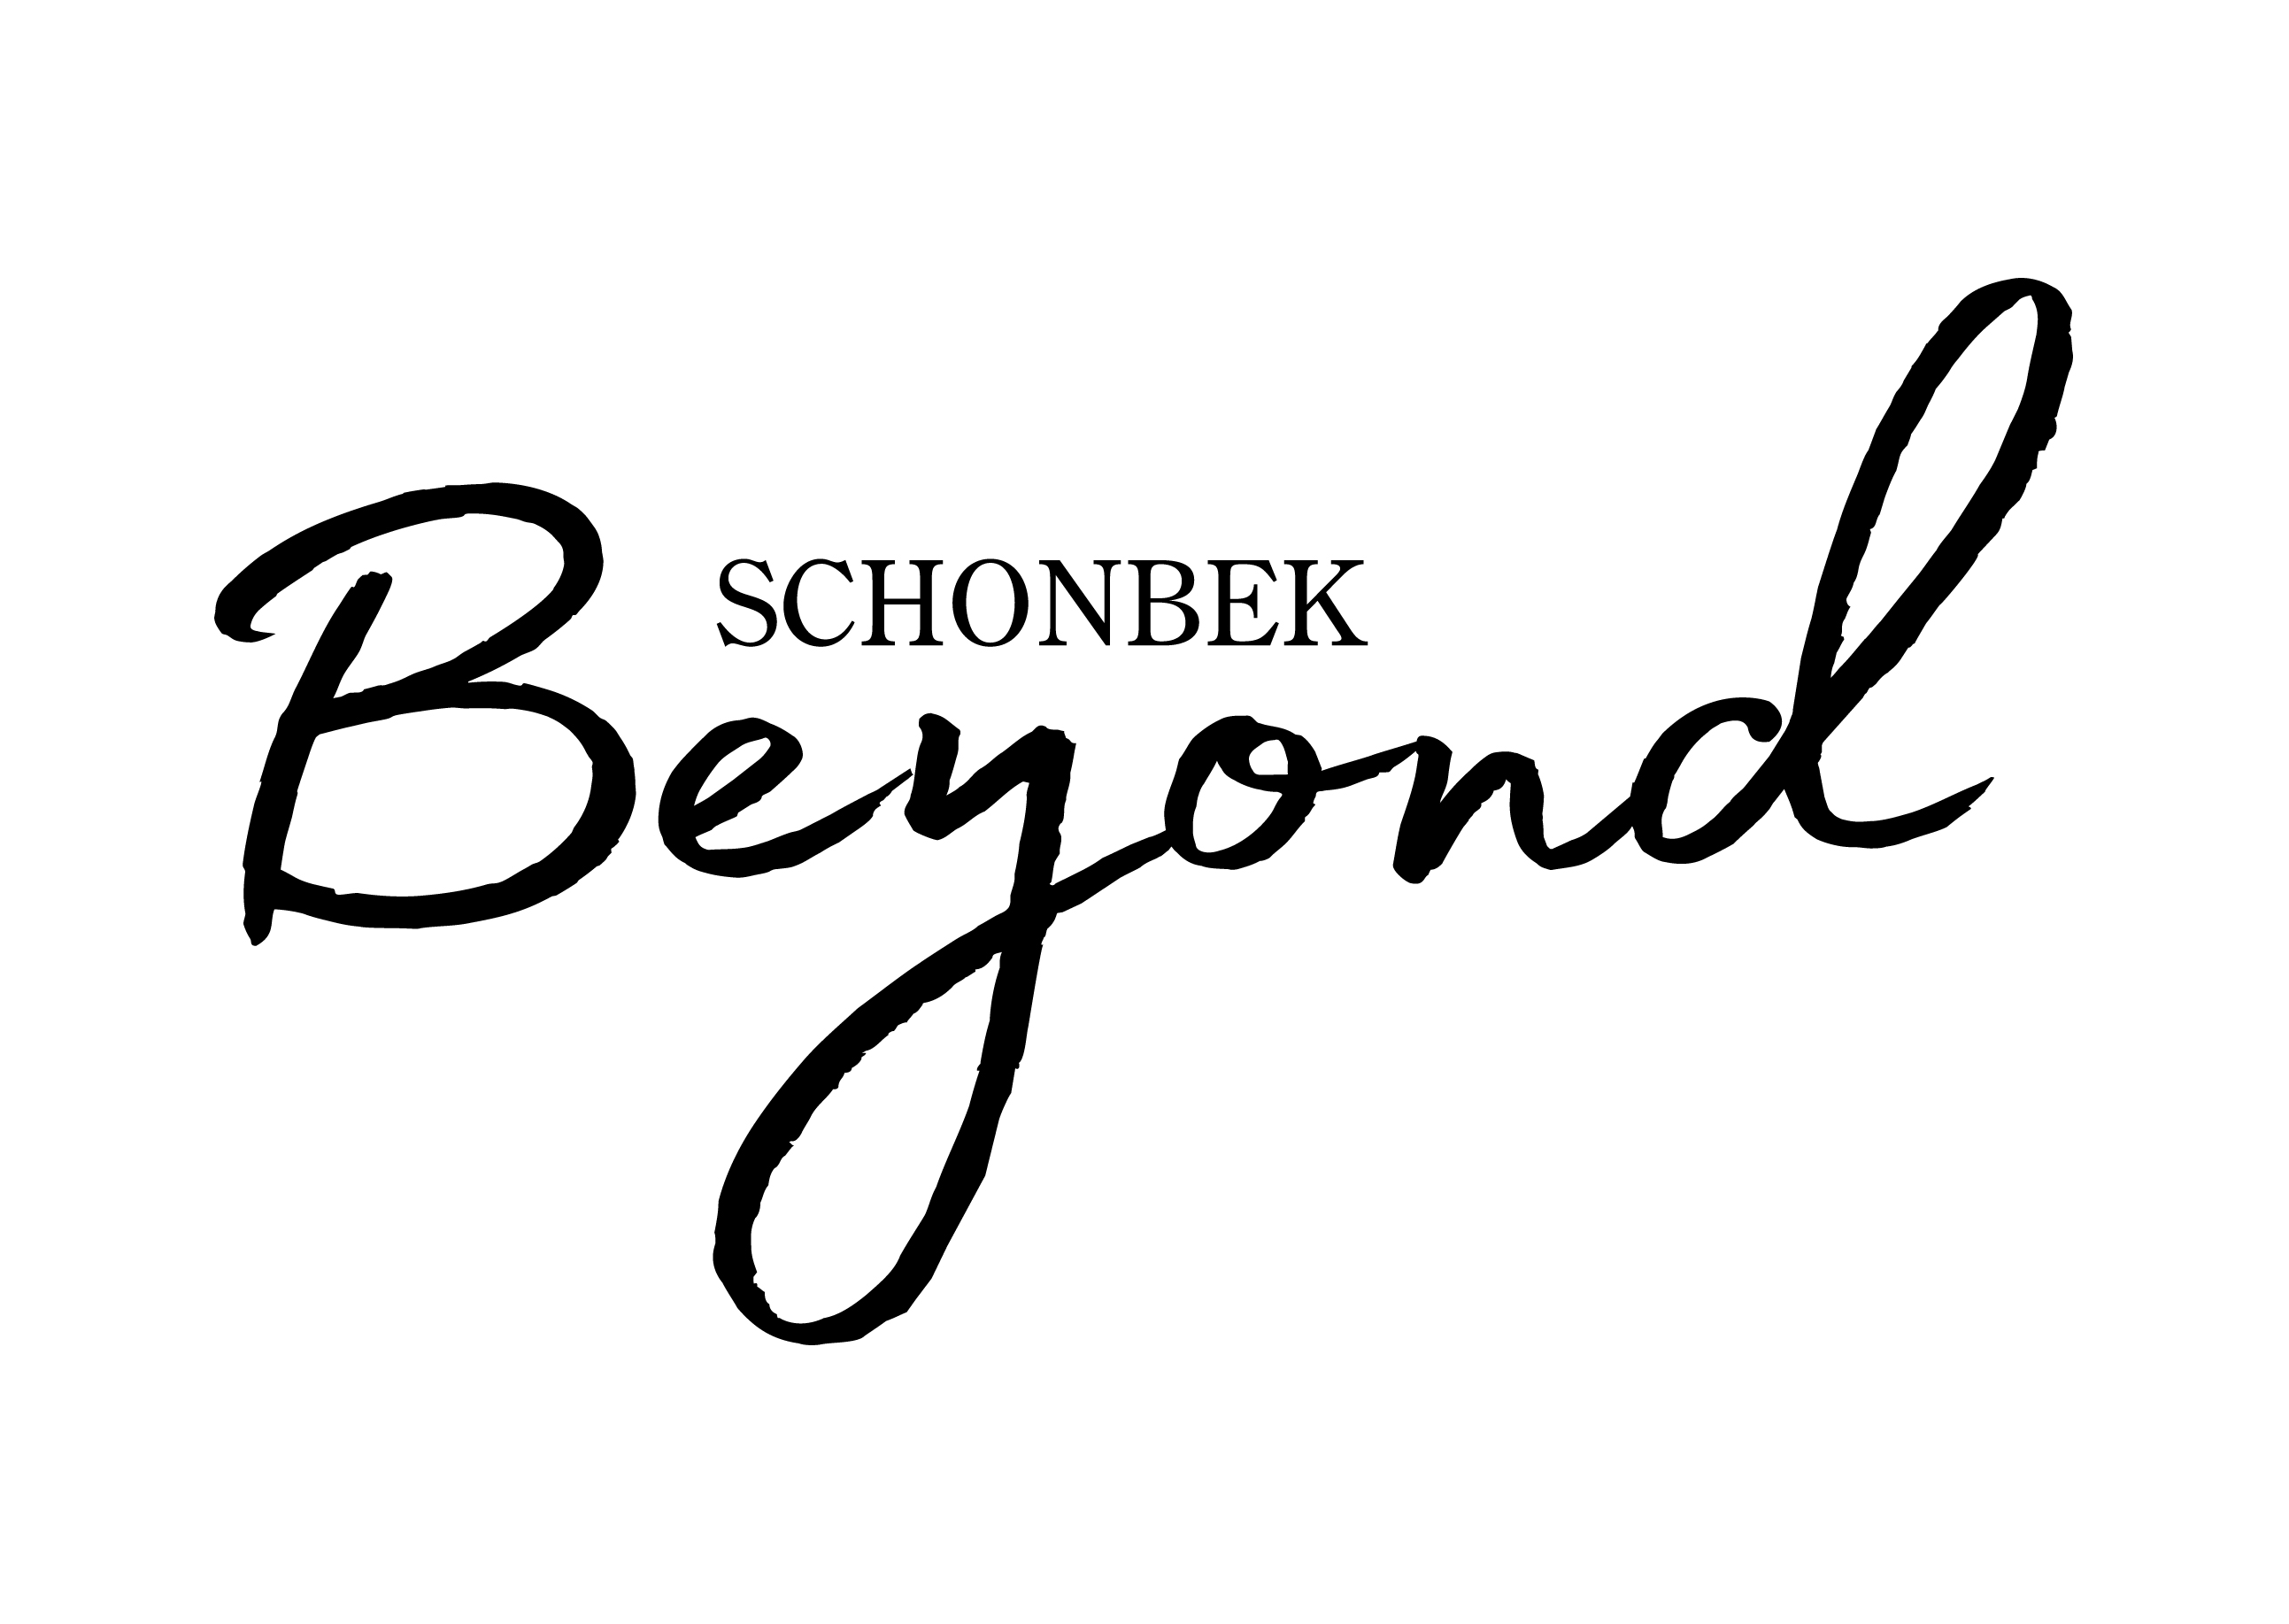 Schonbek Beyond logo